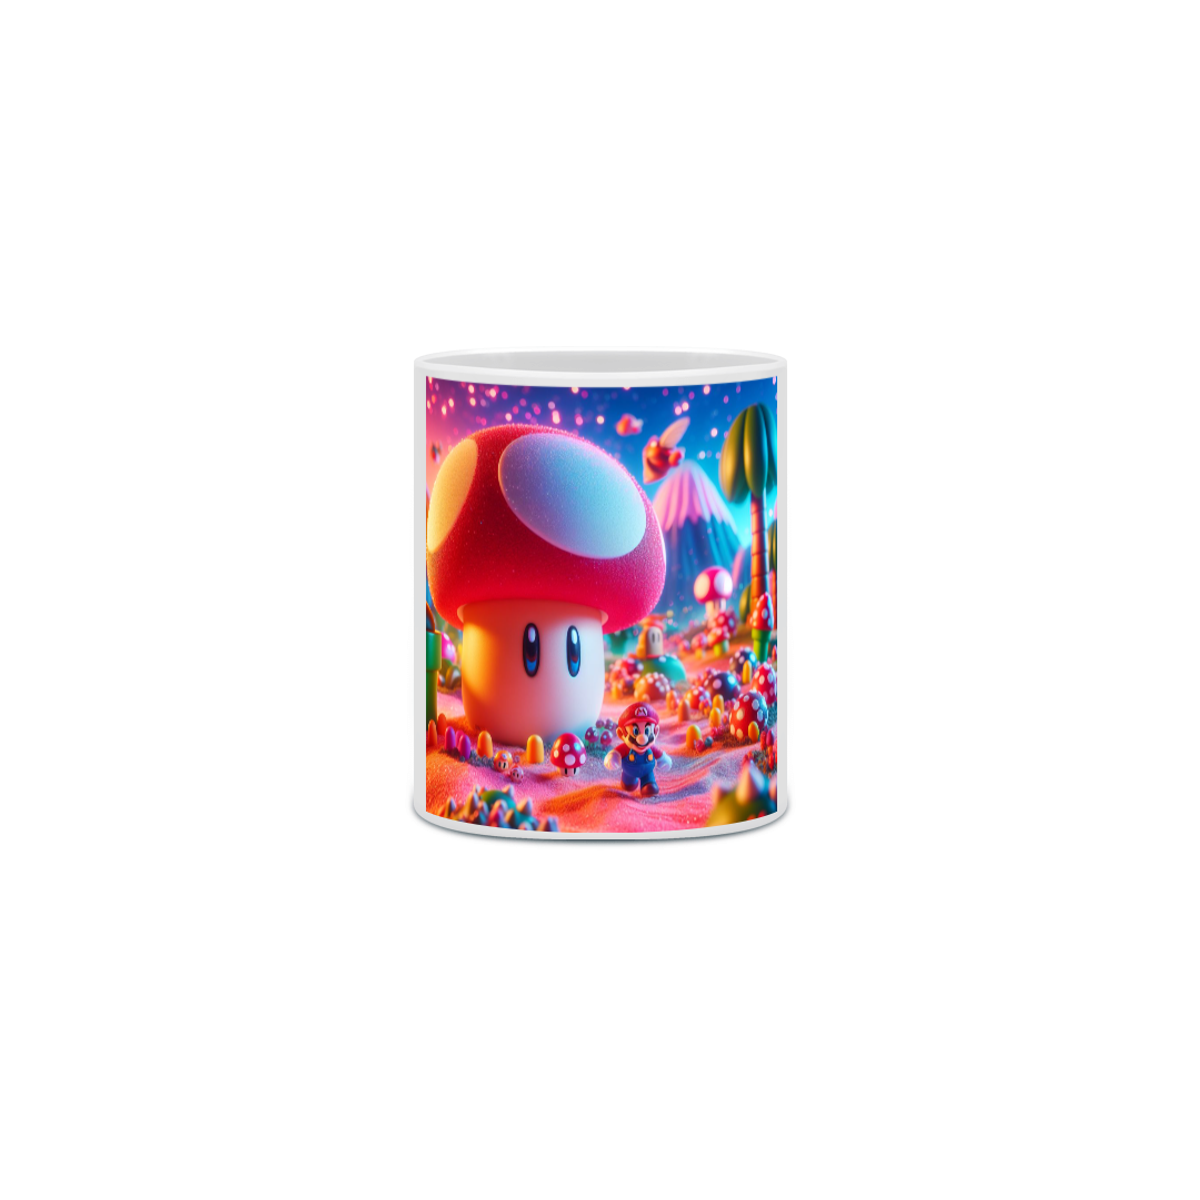 Nome do produto: Cogumelo Mágico: Aventura Colorida de Super Mario